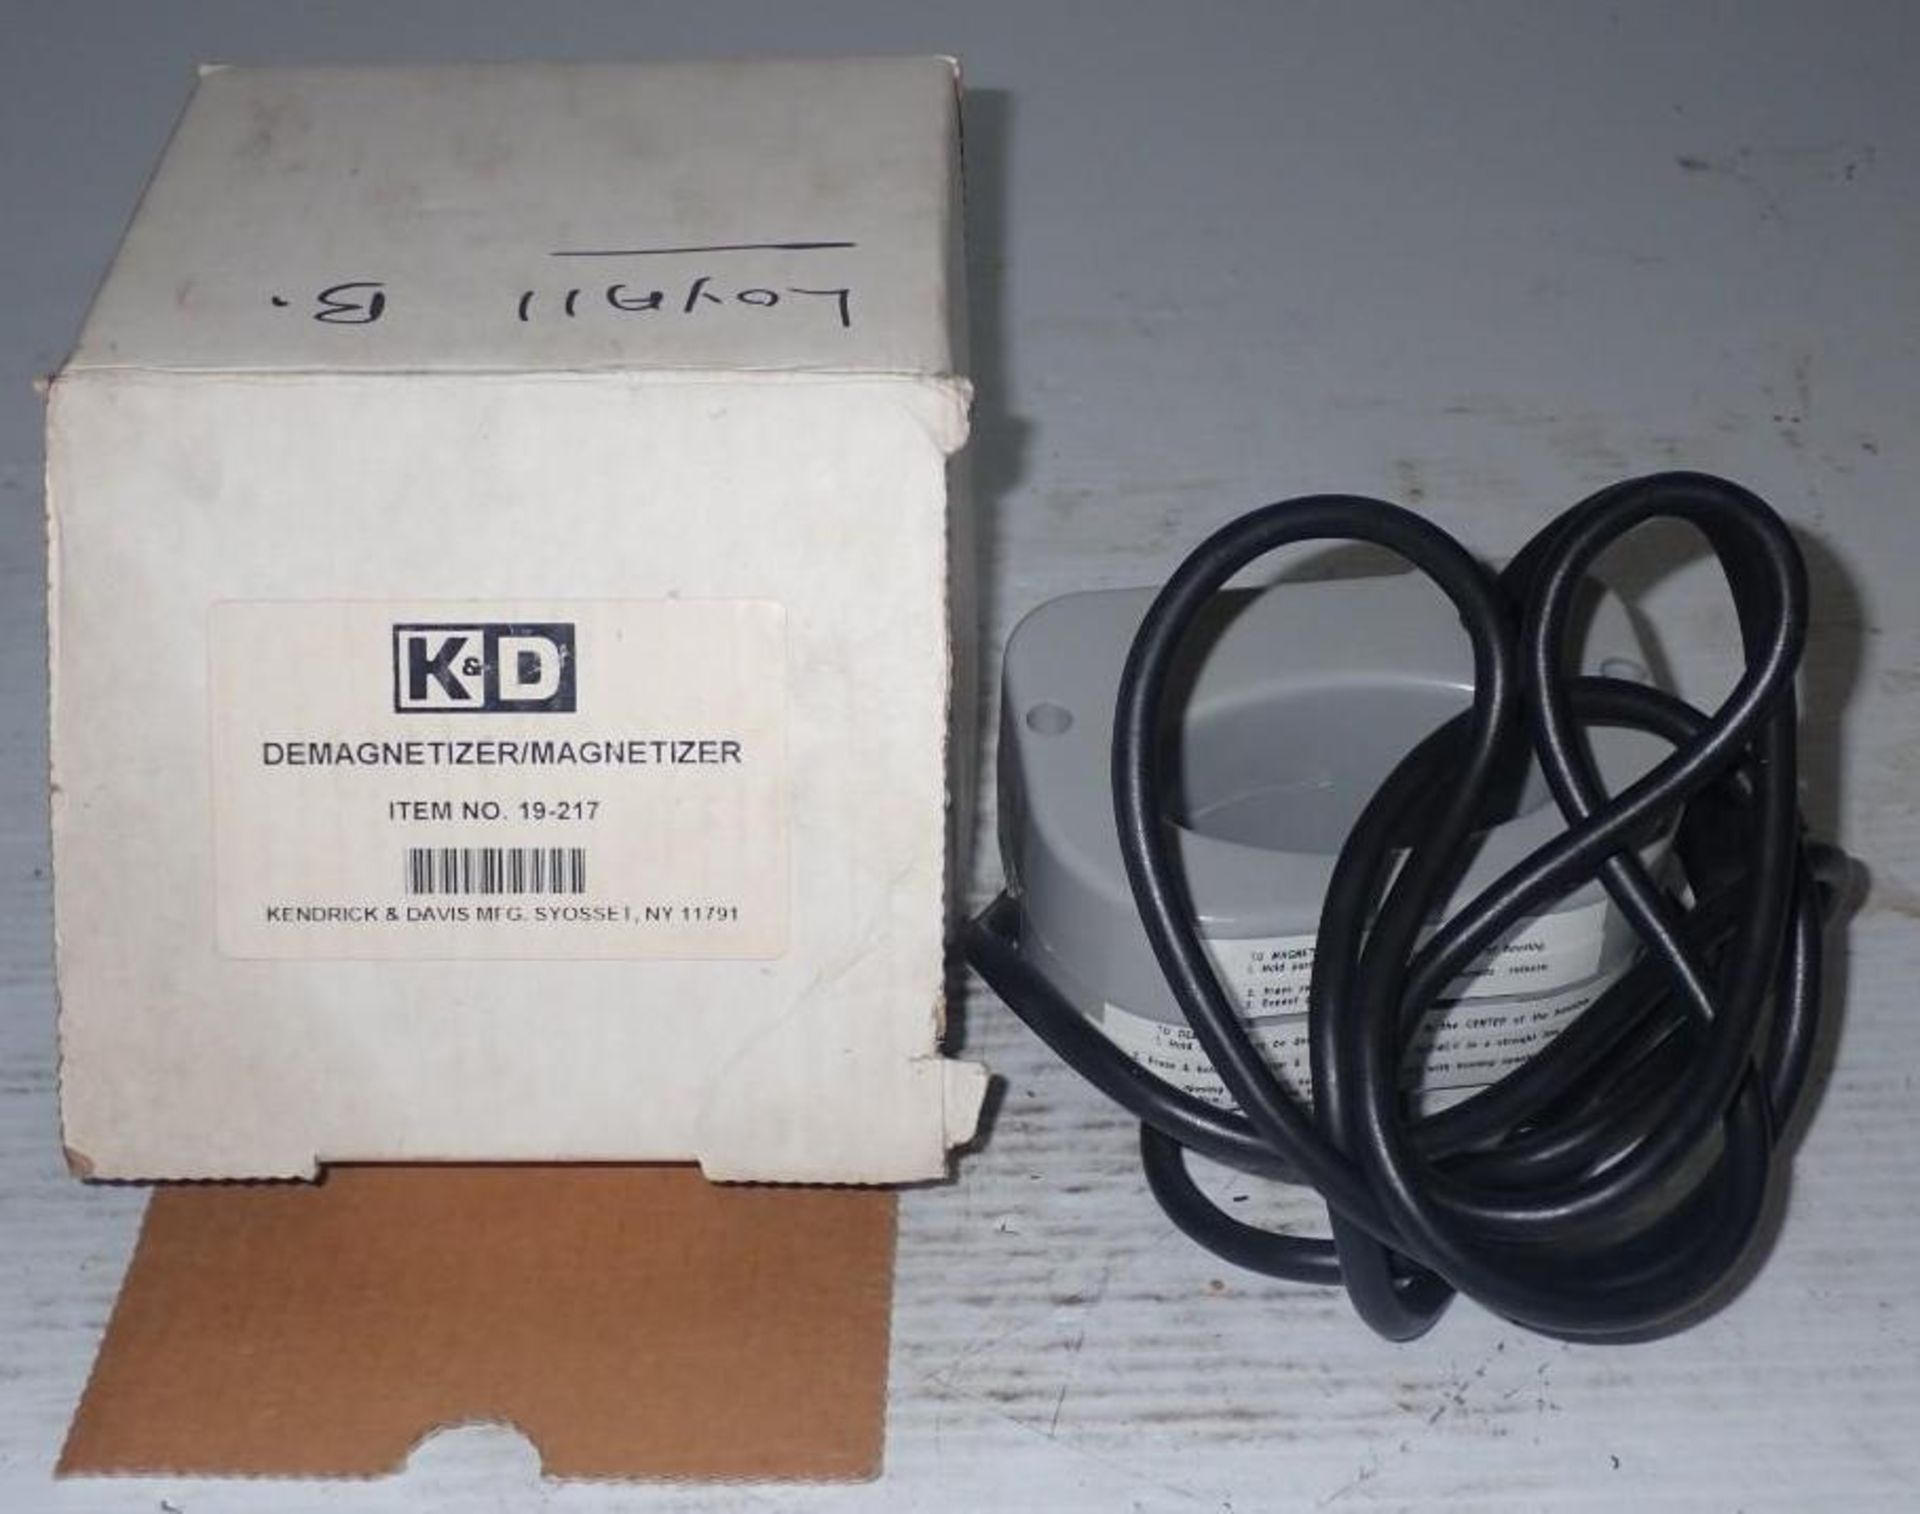 K&D #19-217 Demagnetizer / Magnetizer